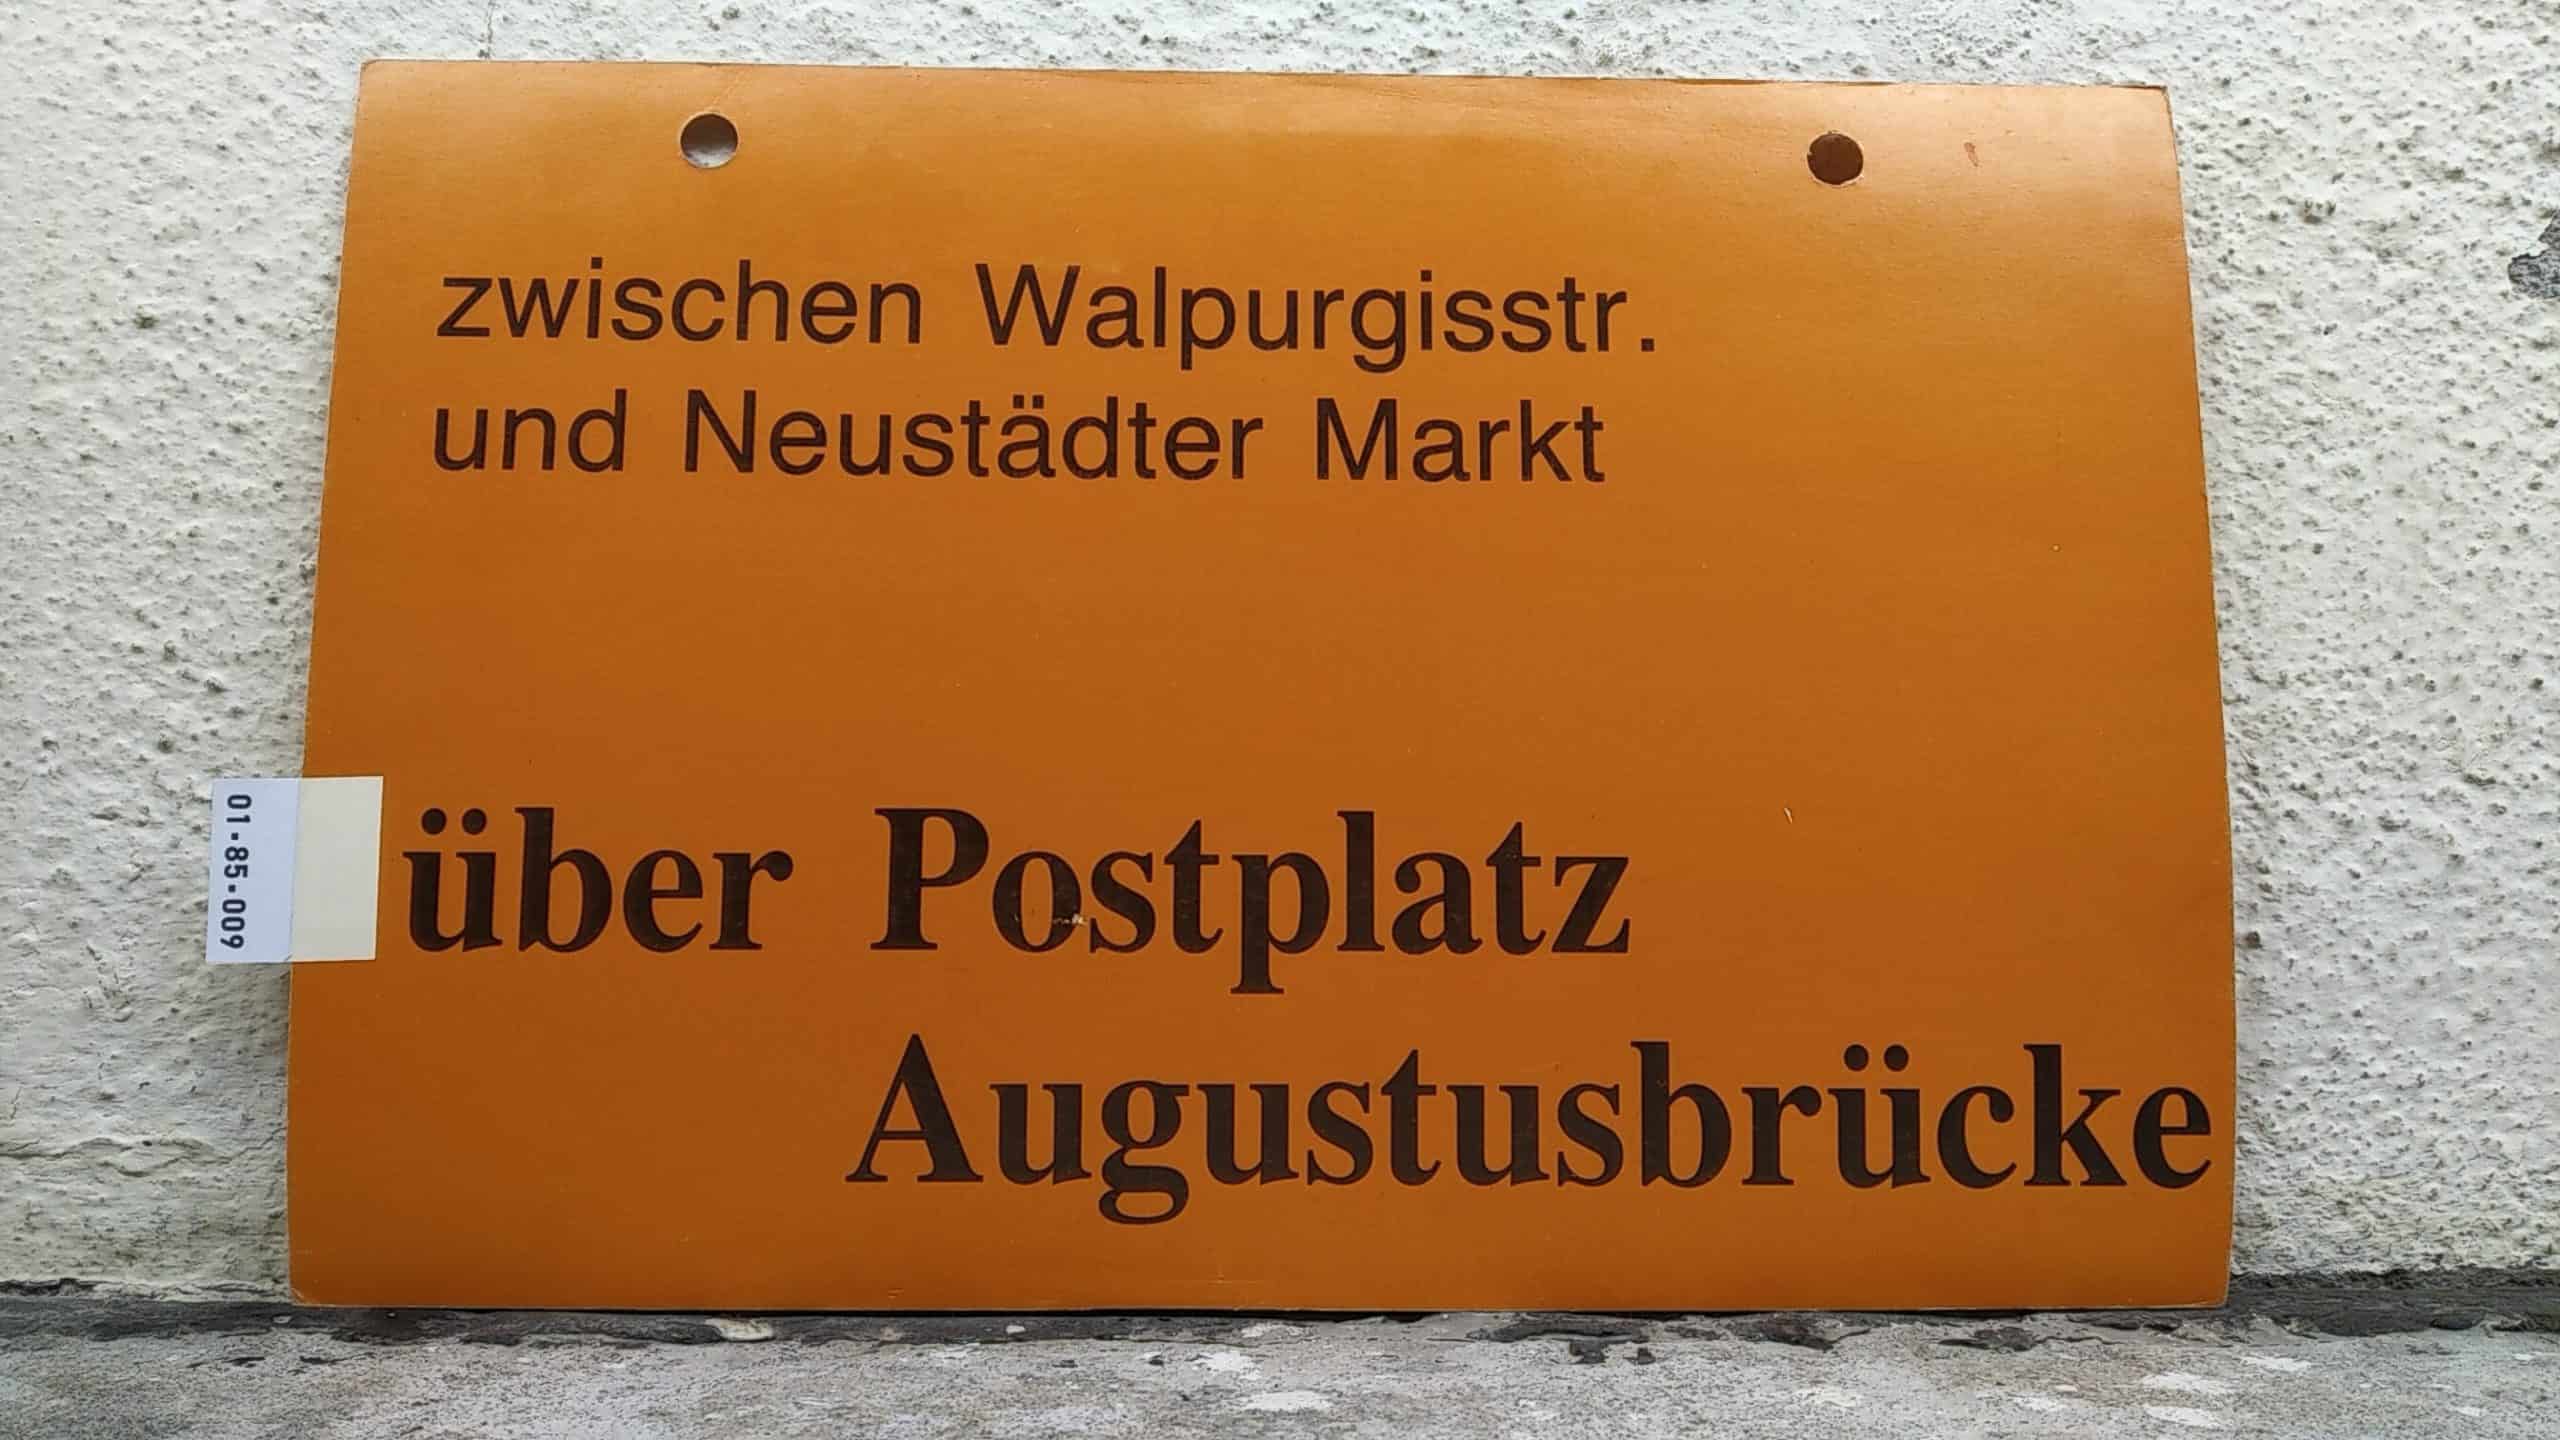 Ein seltenes Straßenbahn-Umleitungsschild aus Dresden: zwischen Walpurgisstr. und Neustädter Markt über Postplatz Augustusbrücke